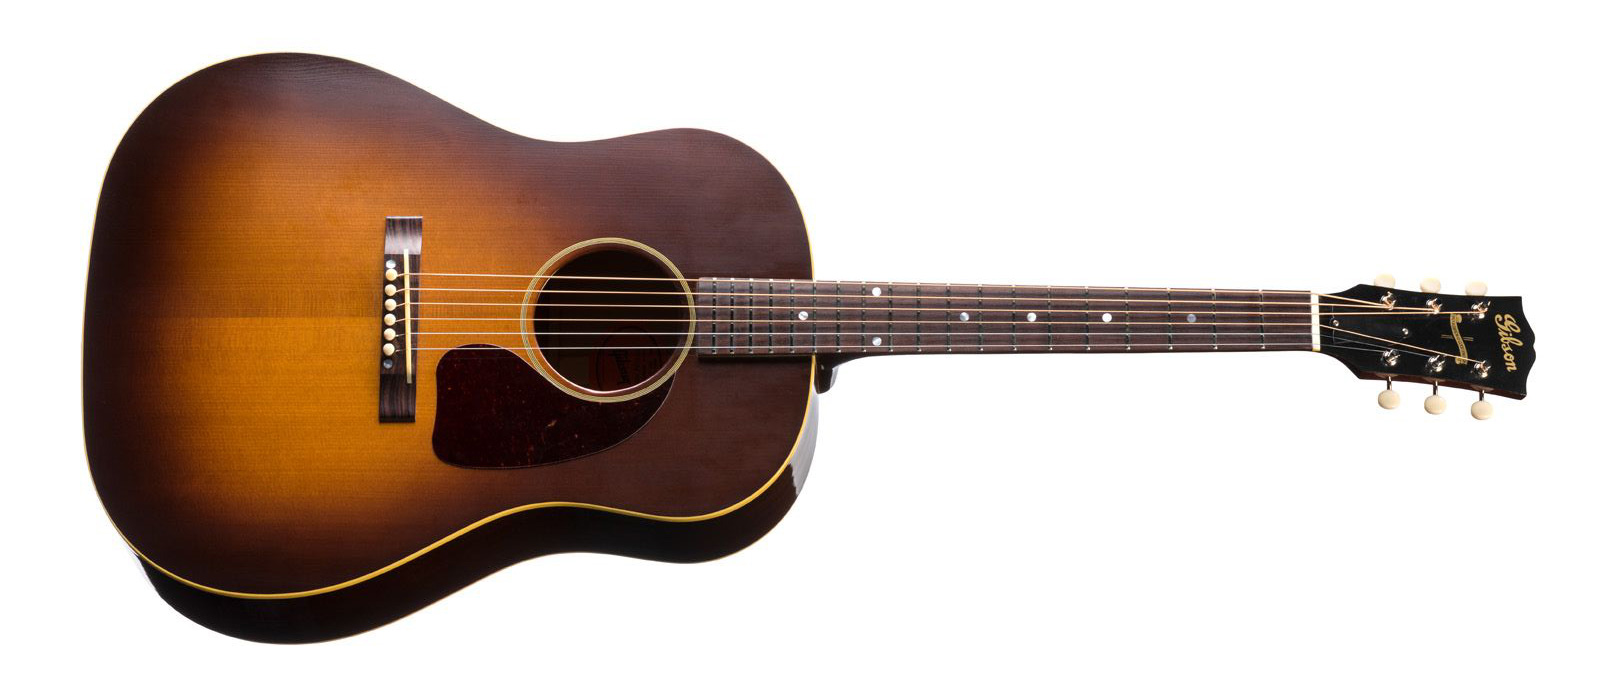 奥田民生 2014年初版商品 アコースティックギター ギブソン 製造番号 